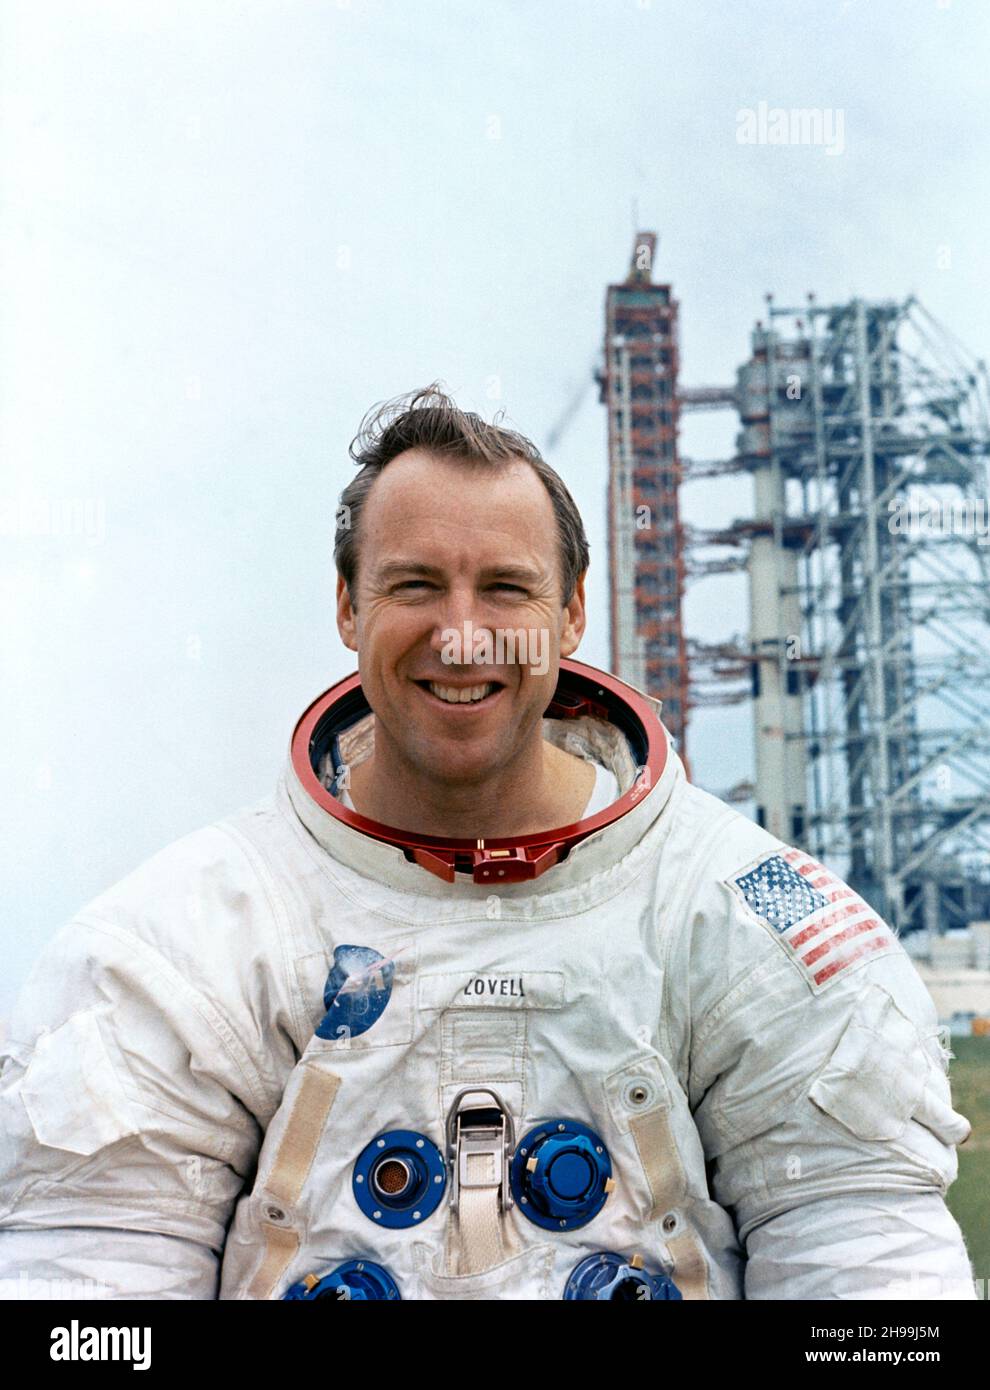 El astronauta James A. Lovell Jr., comandante de la misión de aterrizaje lunar del Apolo 13 Foto de stock